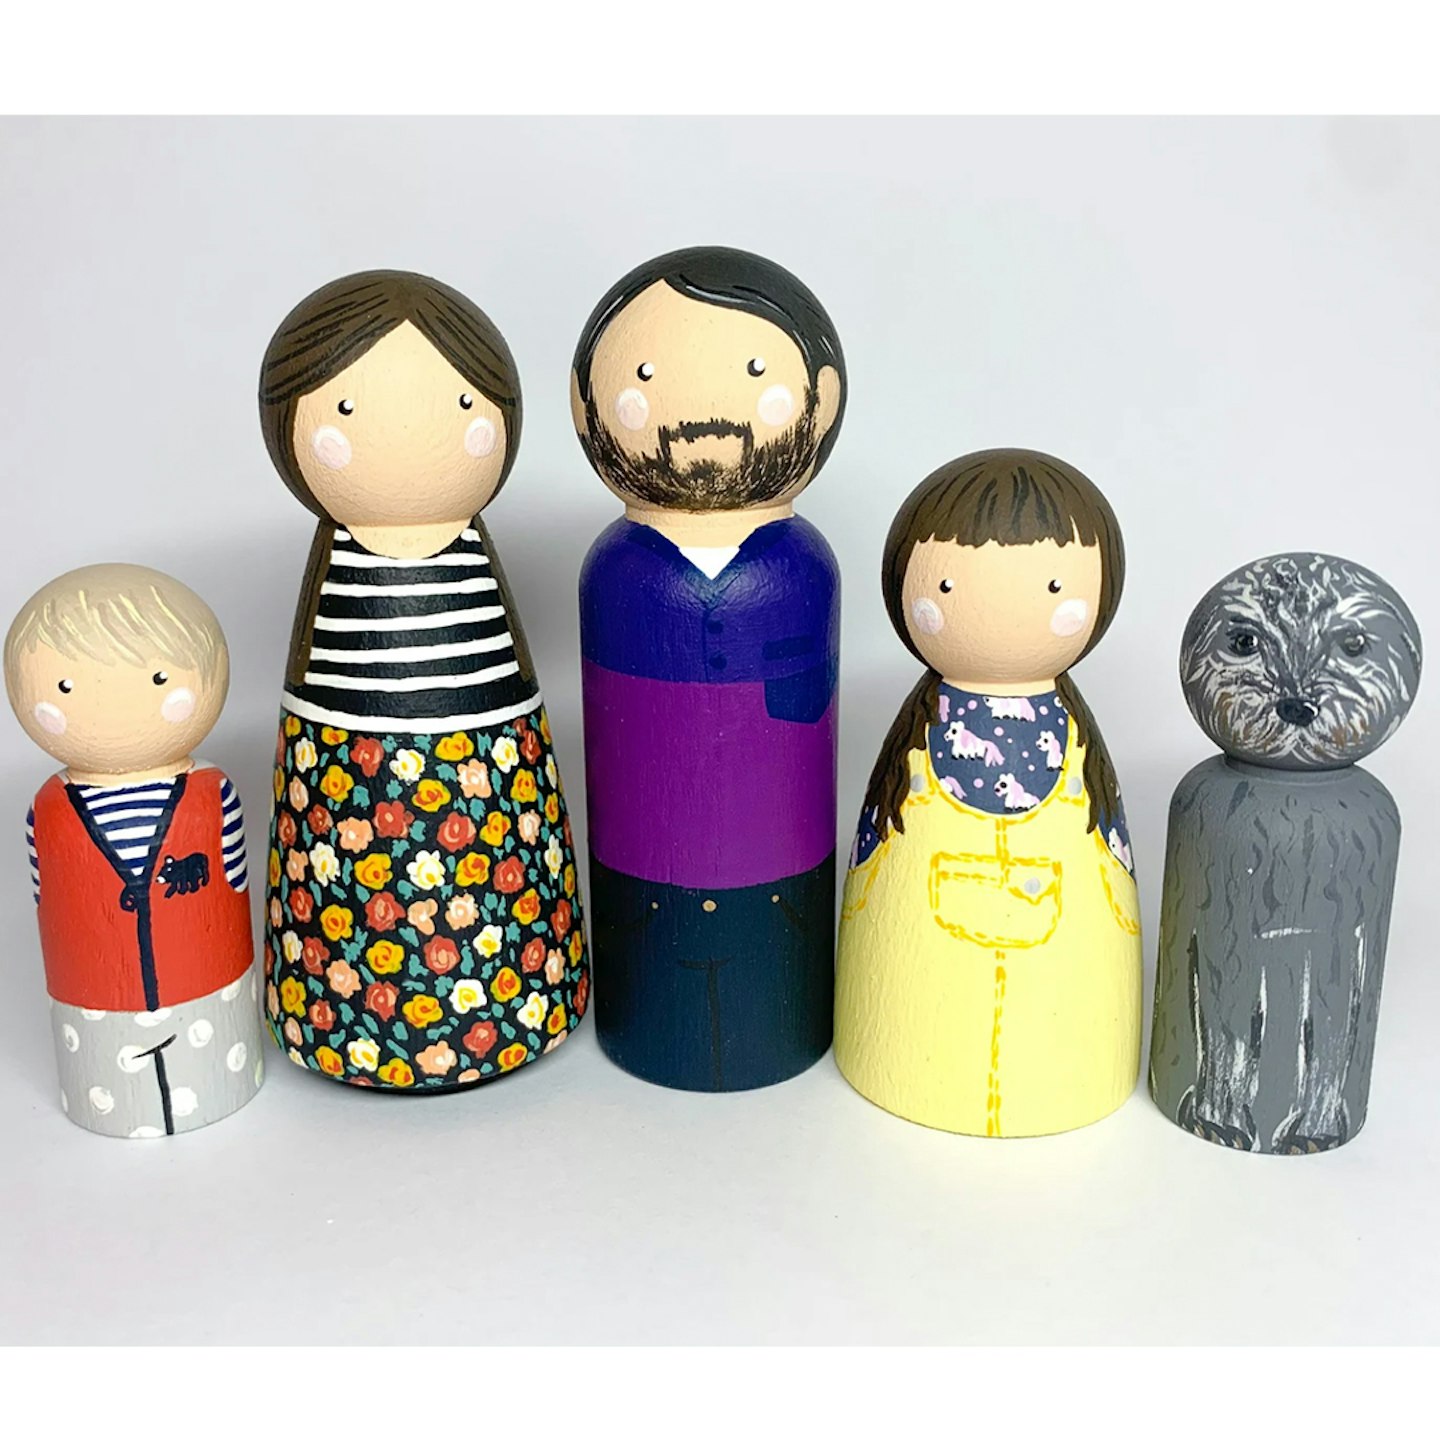 Custom Family peg dolls